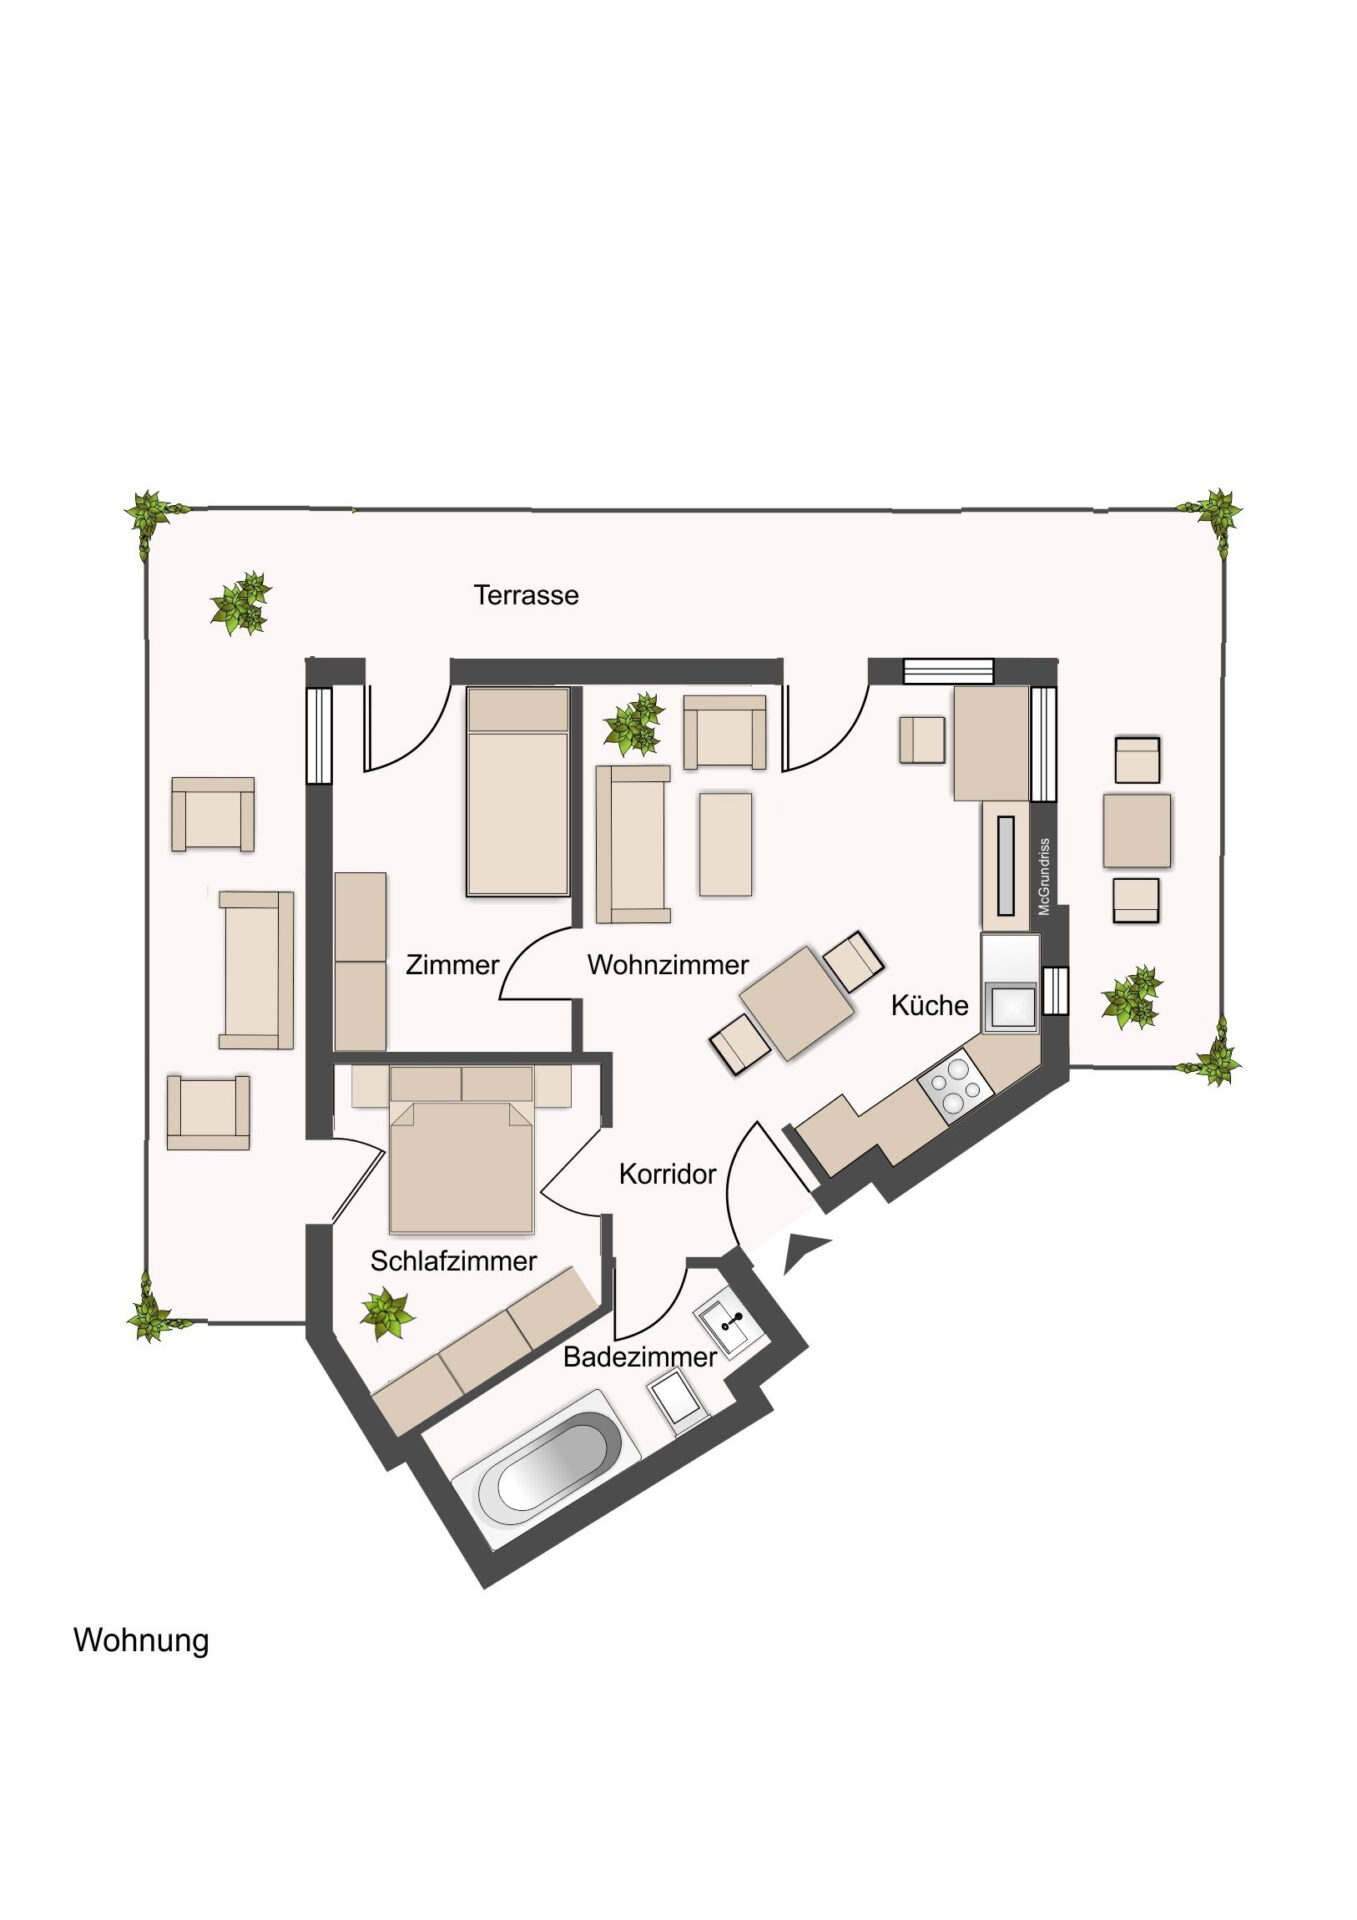 Beispielgrundriss für 3-Raum-Wohnung